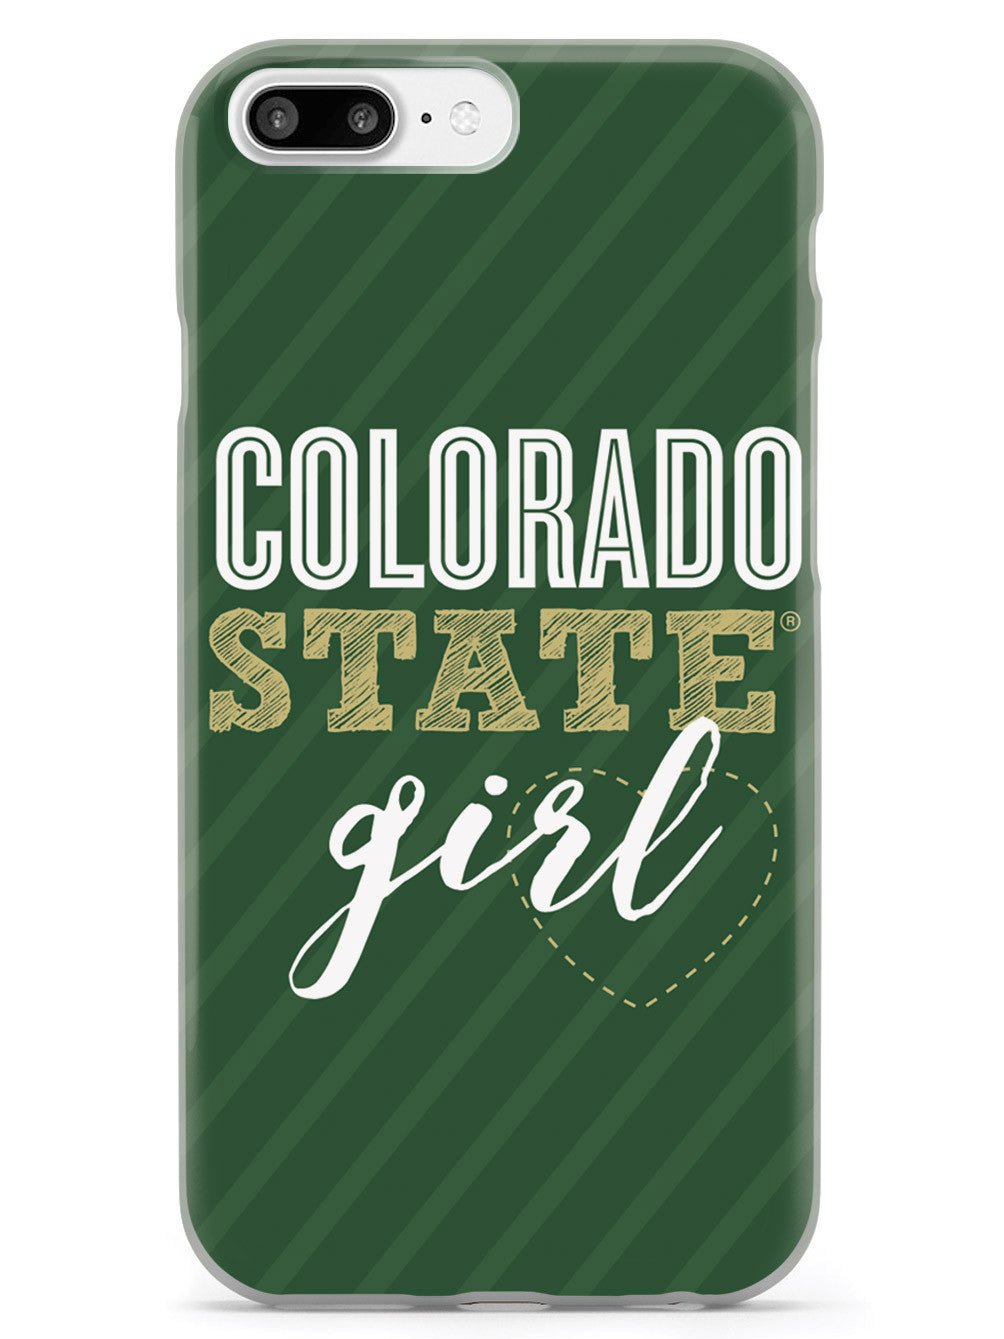 Colorado State Girl Case